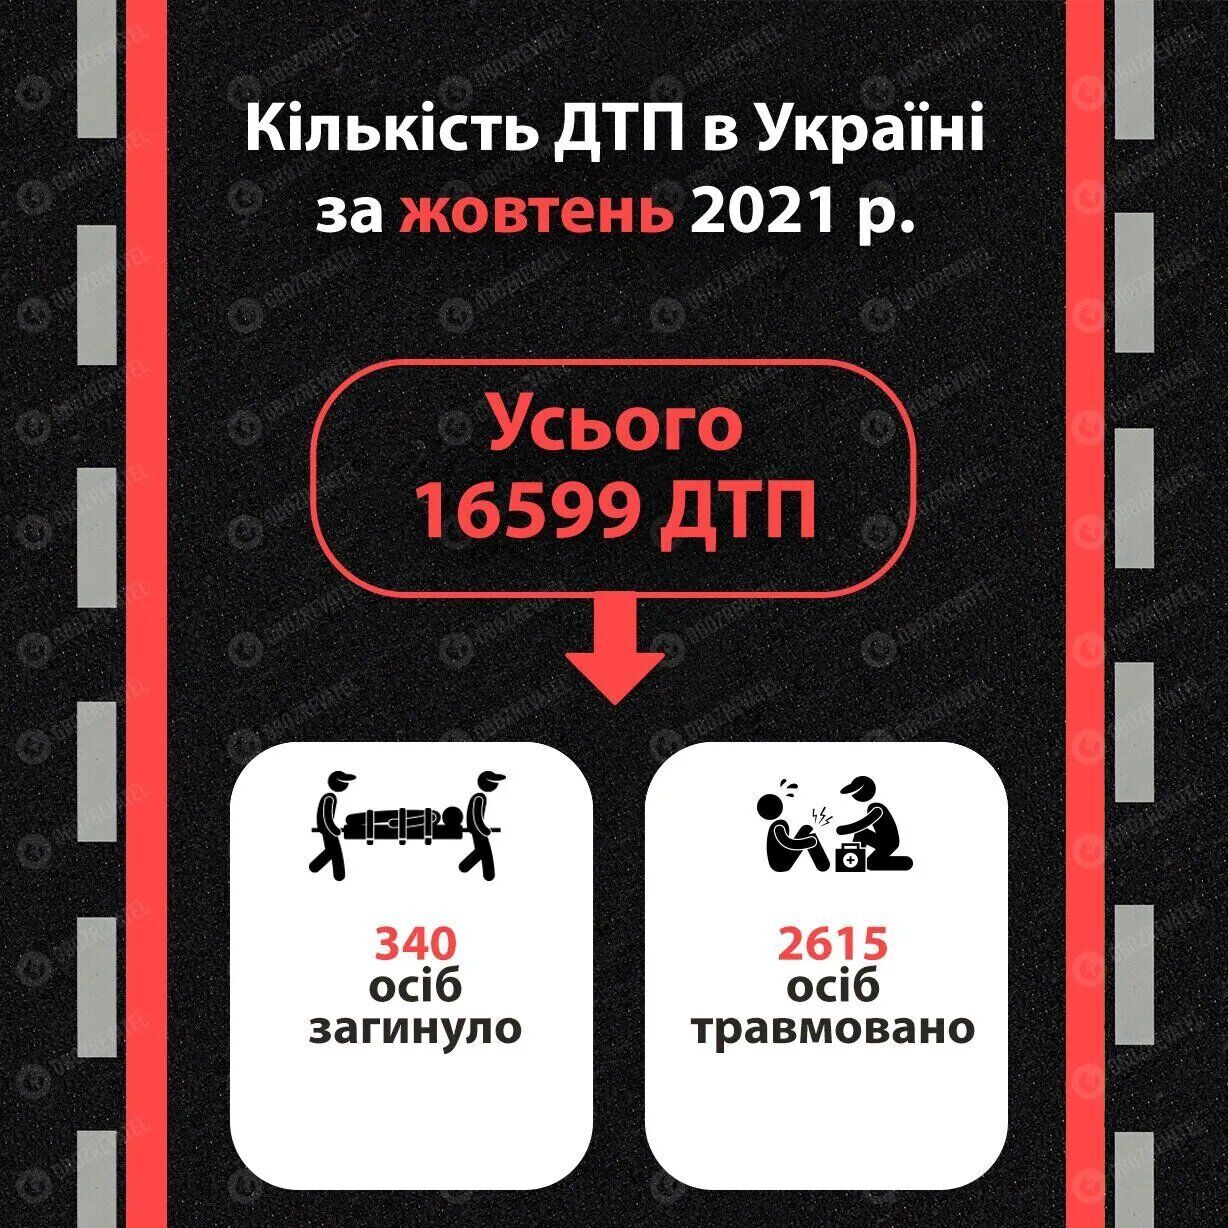 Количество ДТП в Украине в октябре 2021 года